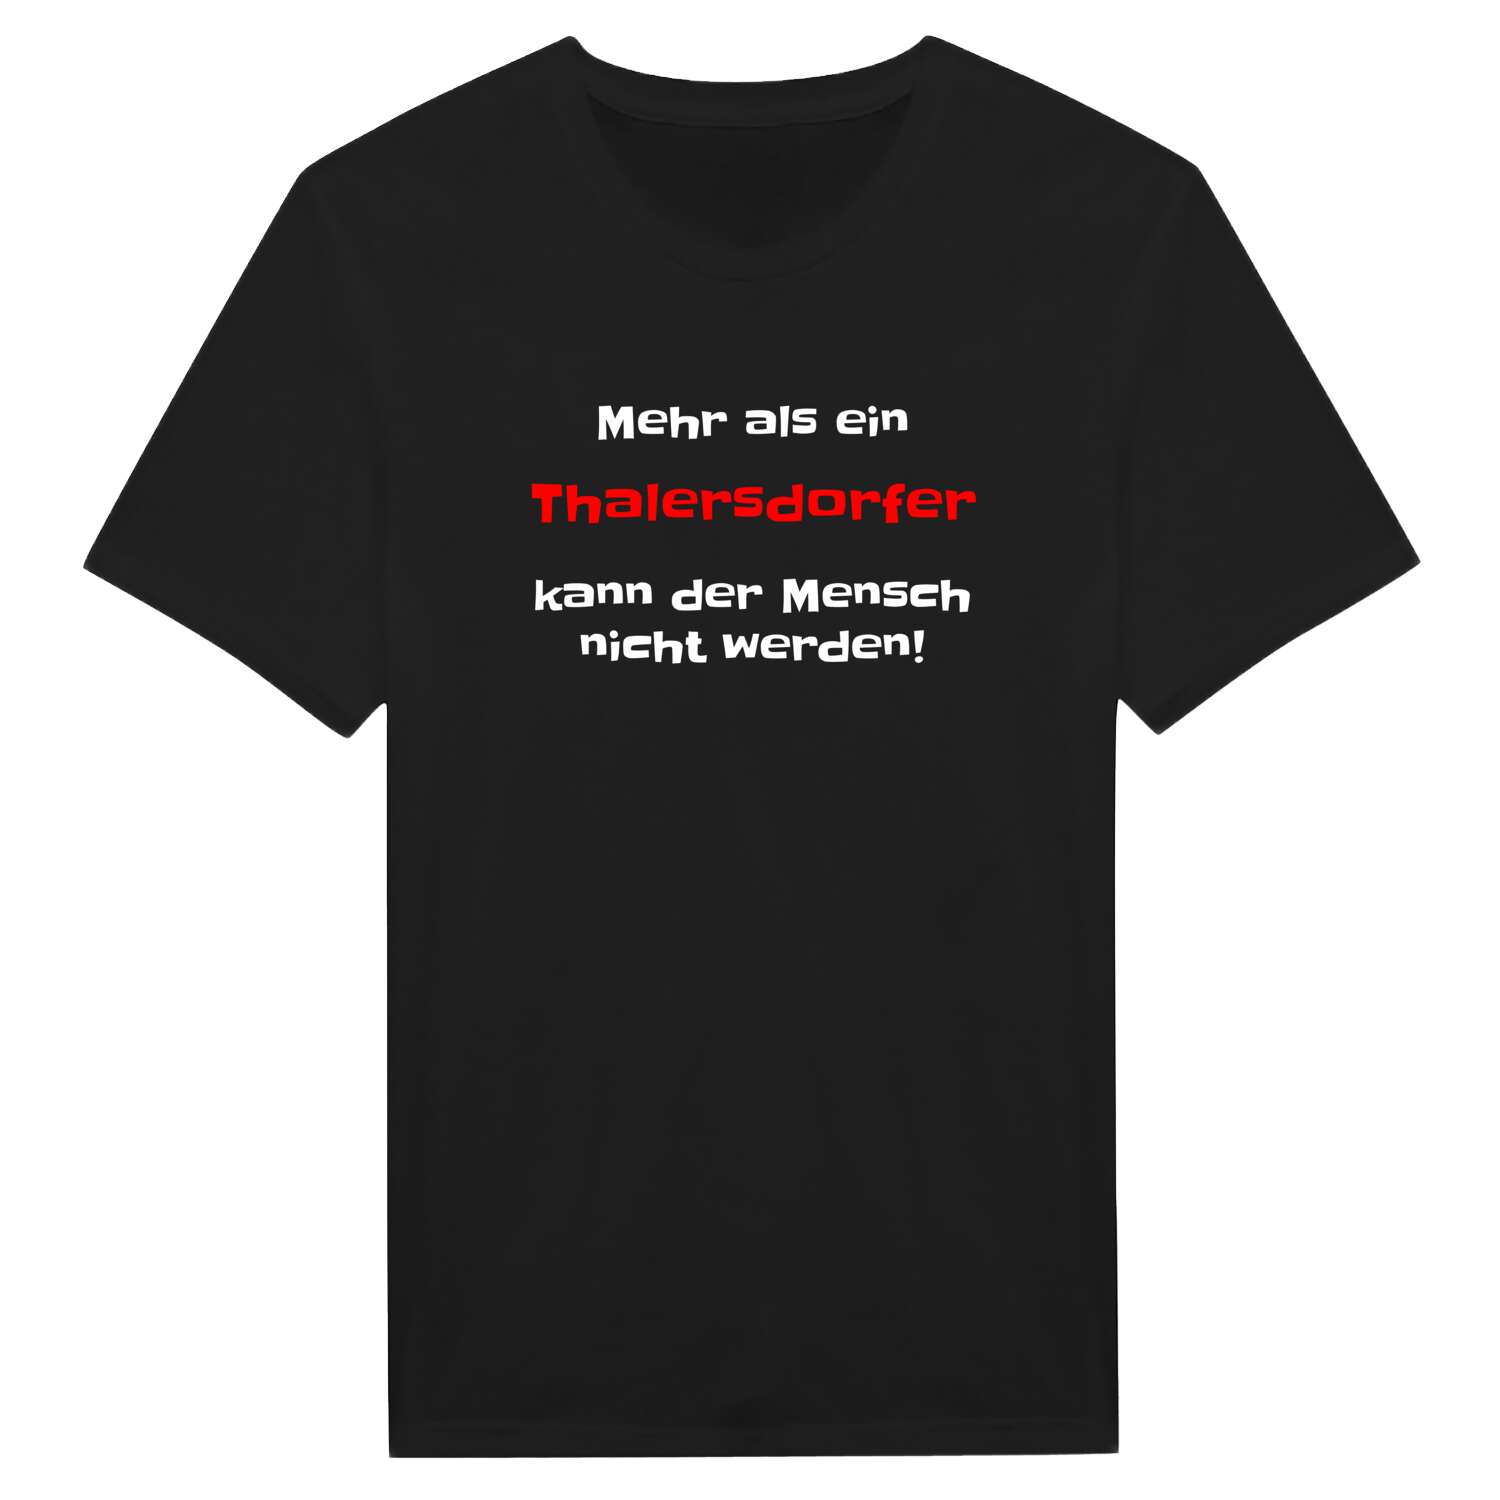 Thalersdorf T-Shirt »Mehr als ein«